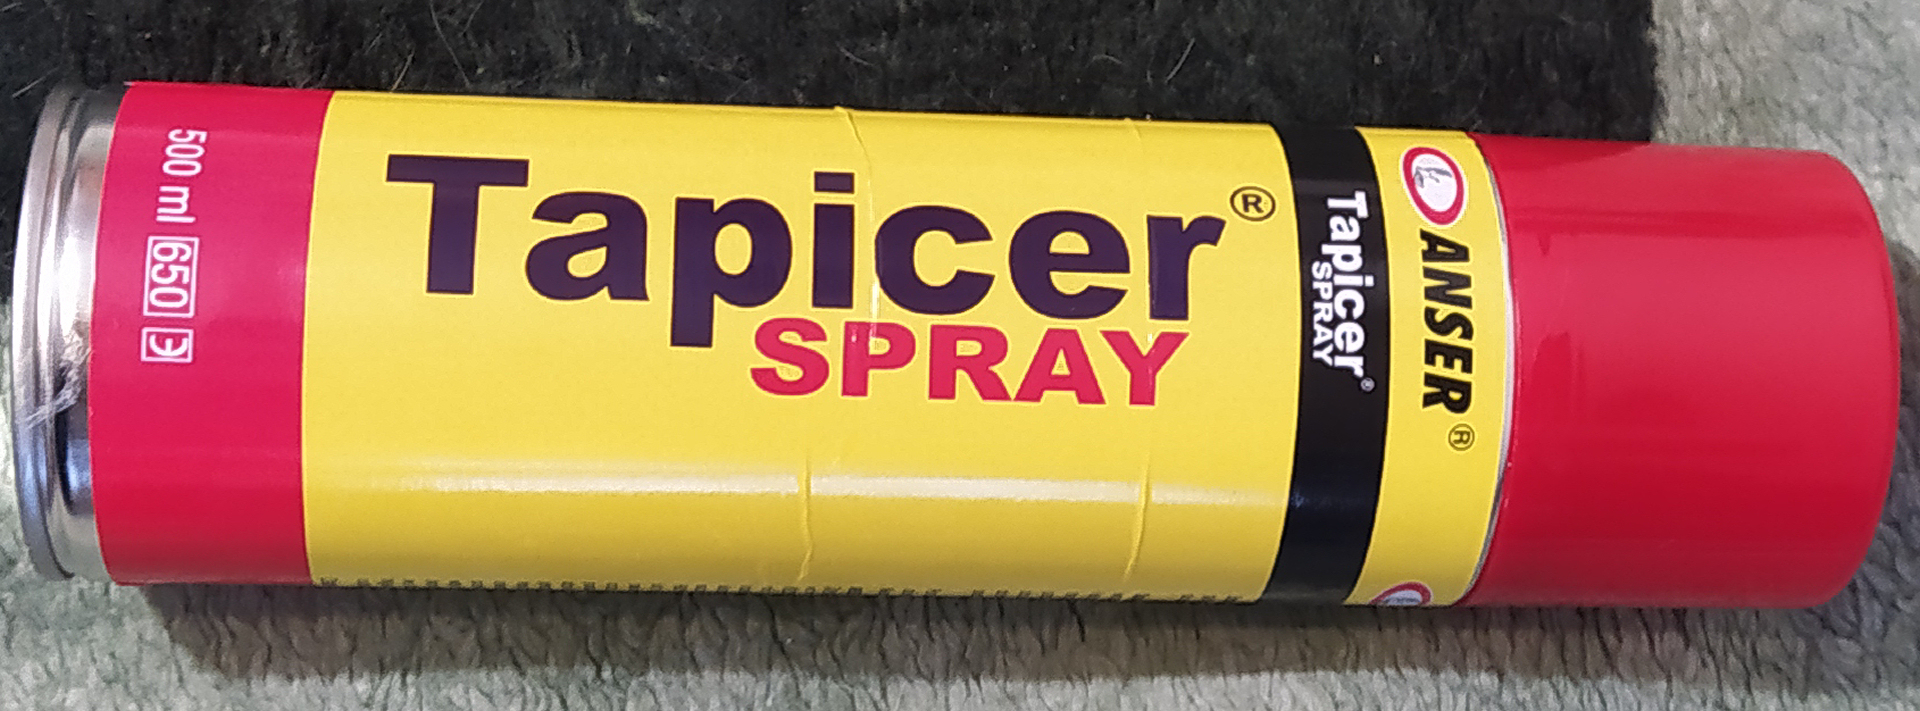 Tapicer Spray